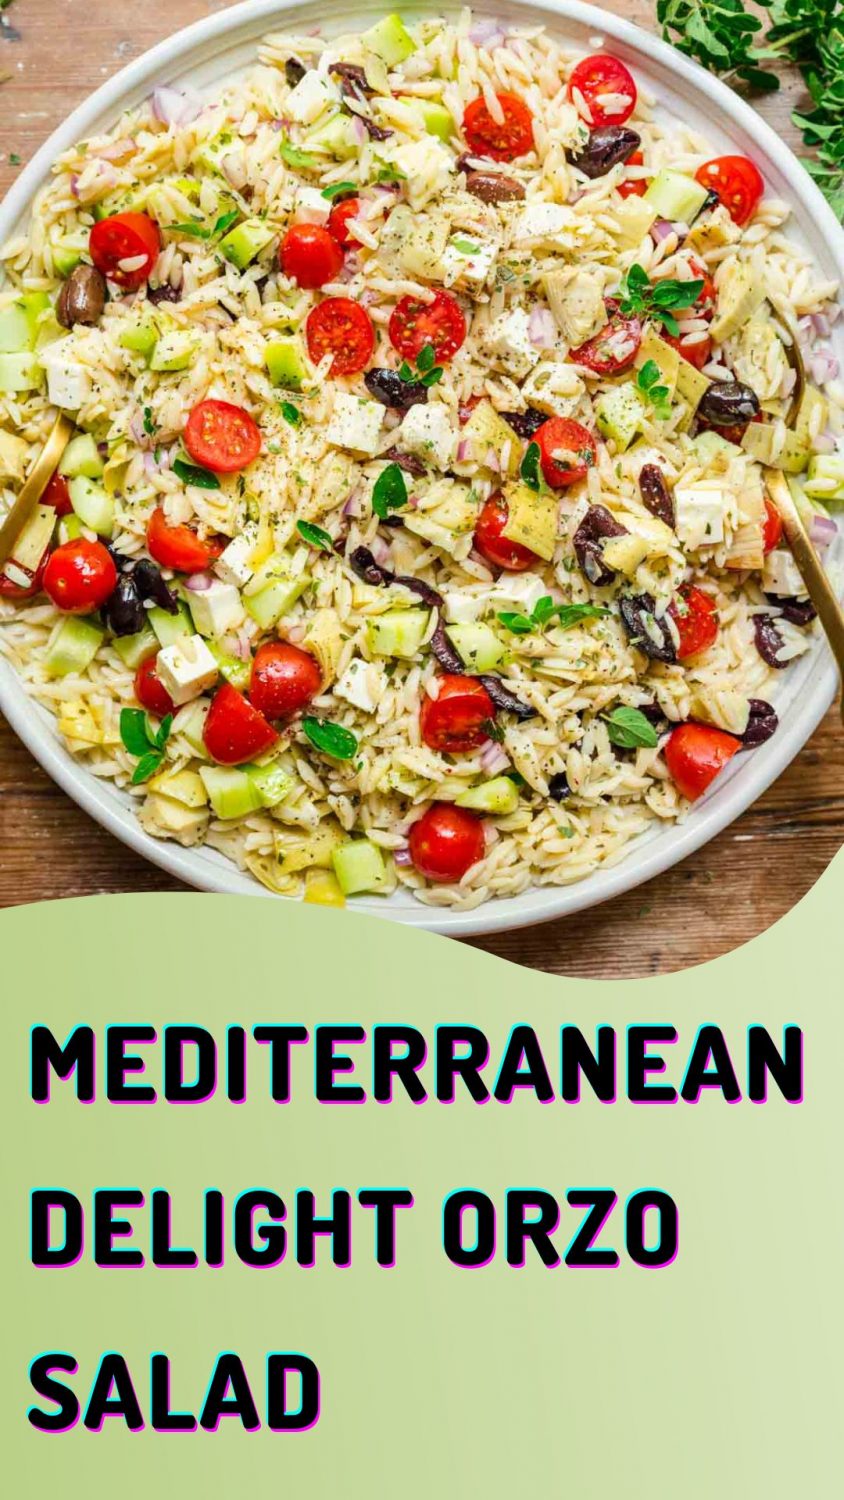 Mediterranean Delight Orzo Salad